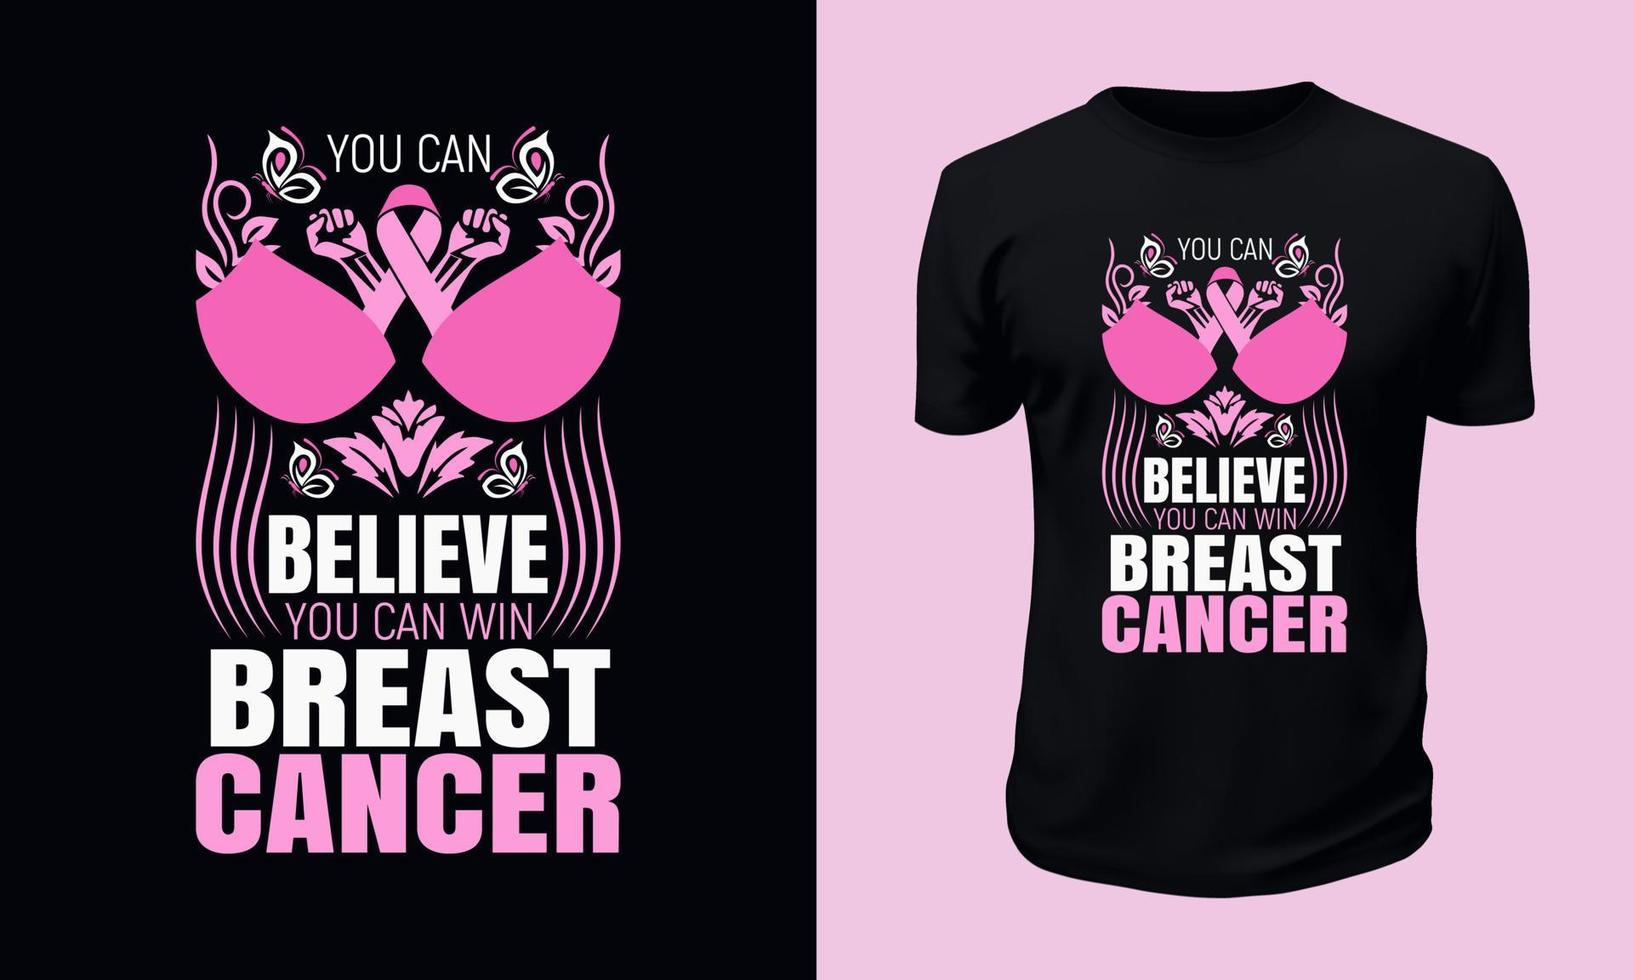 bröst cancer medvetenhet t-shirt design vektor